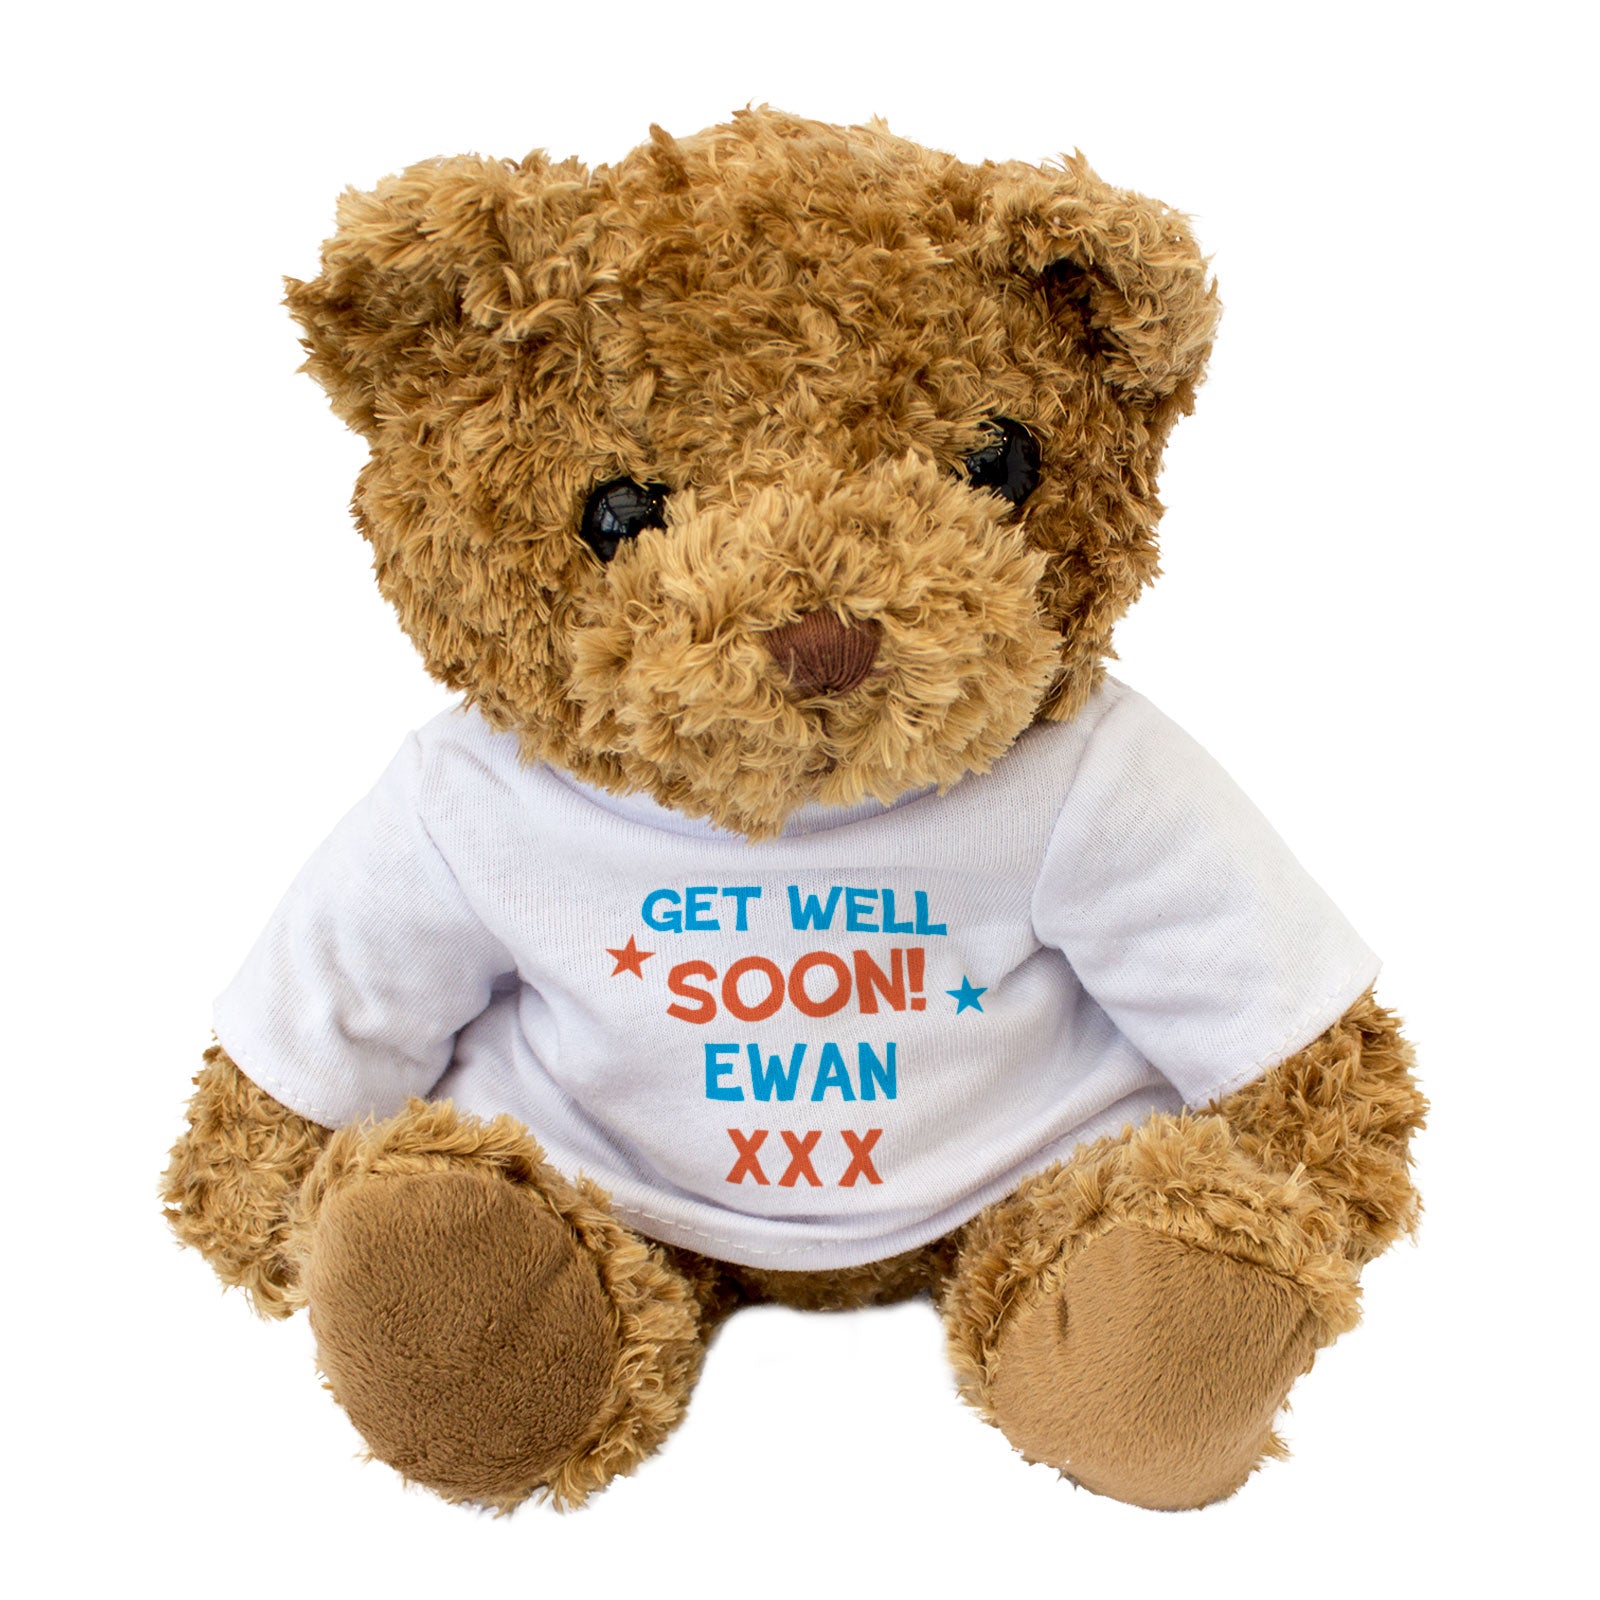 Get Well Soon Ewan - Teddy Bear